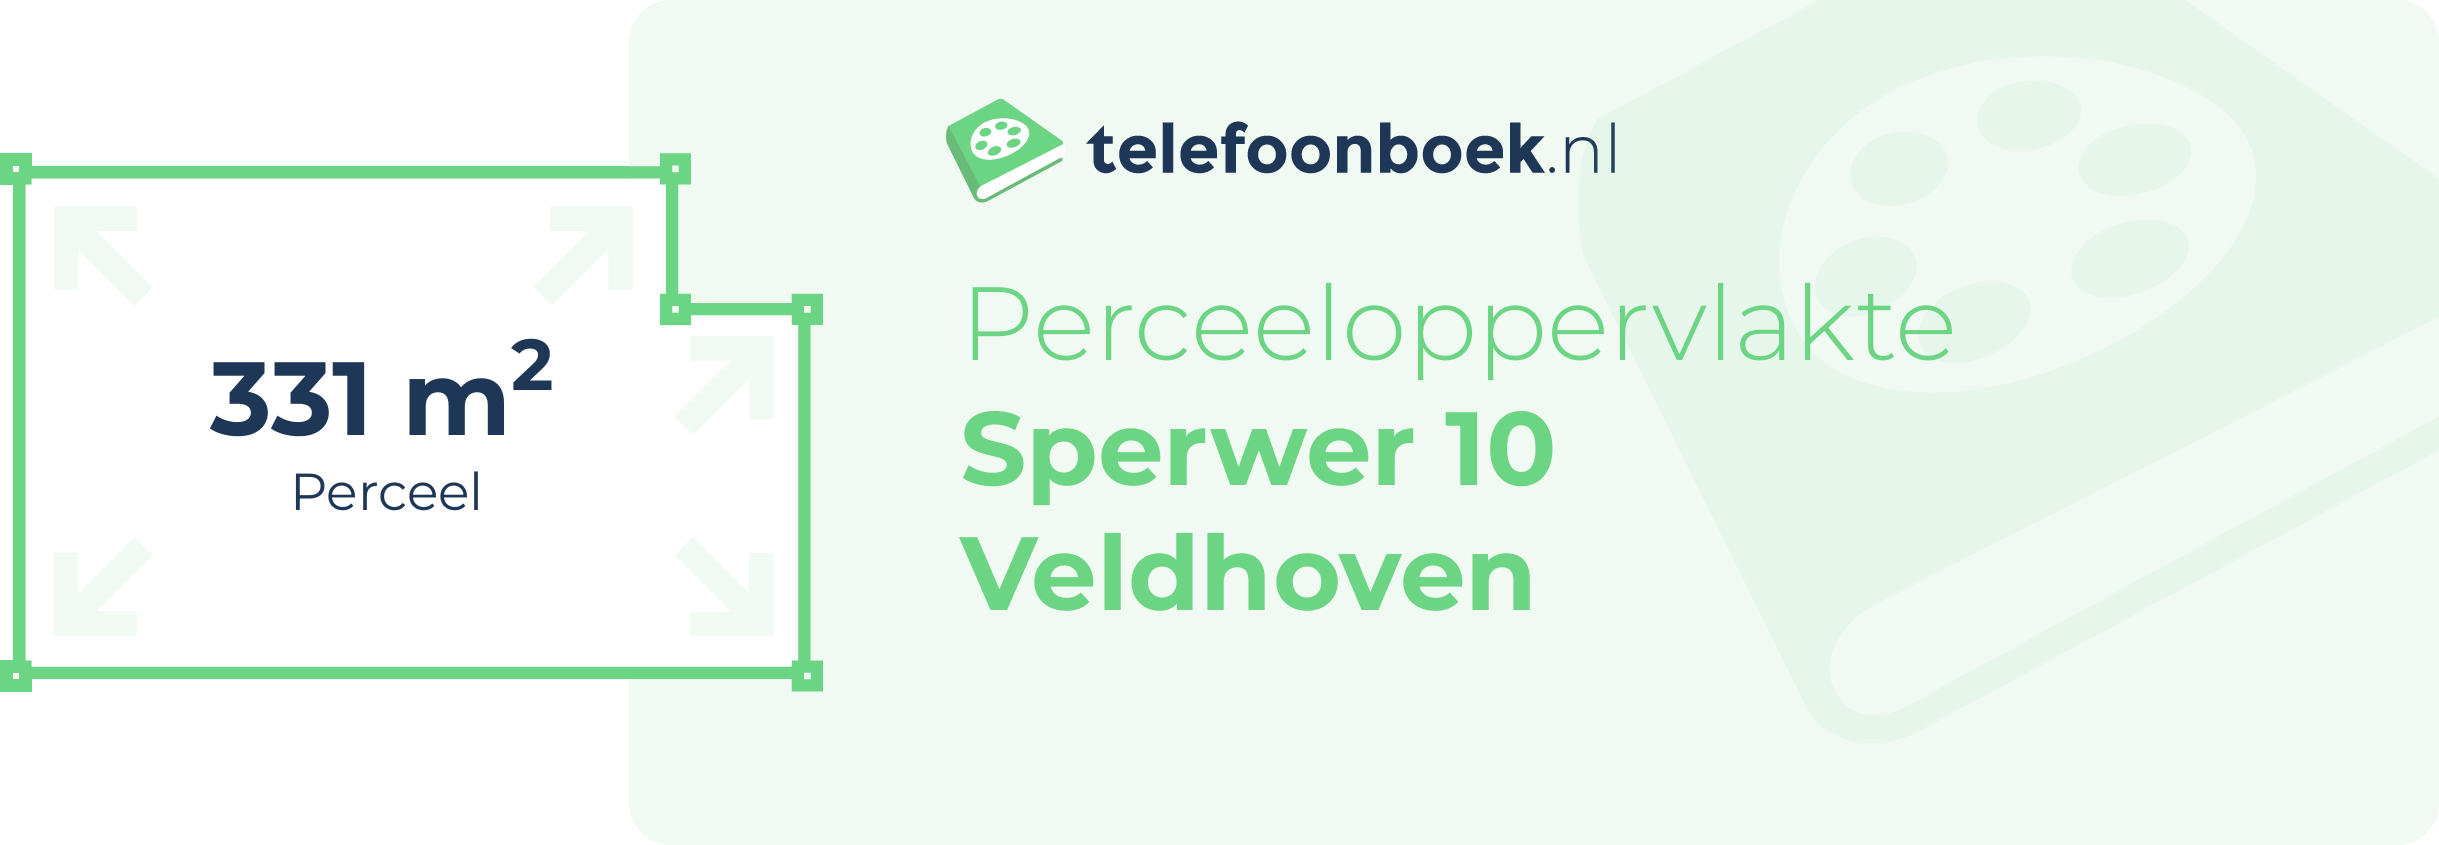 Perceeloppervlakte Sperwer 10 Veldhoven